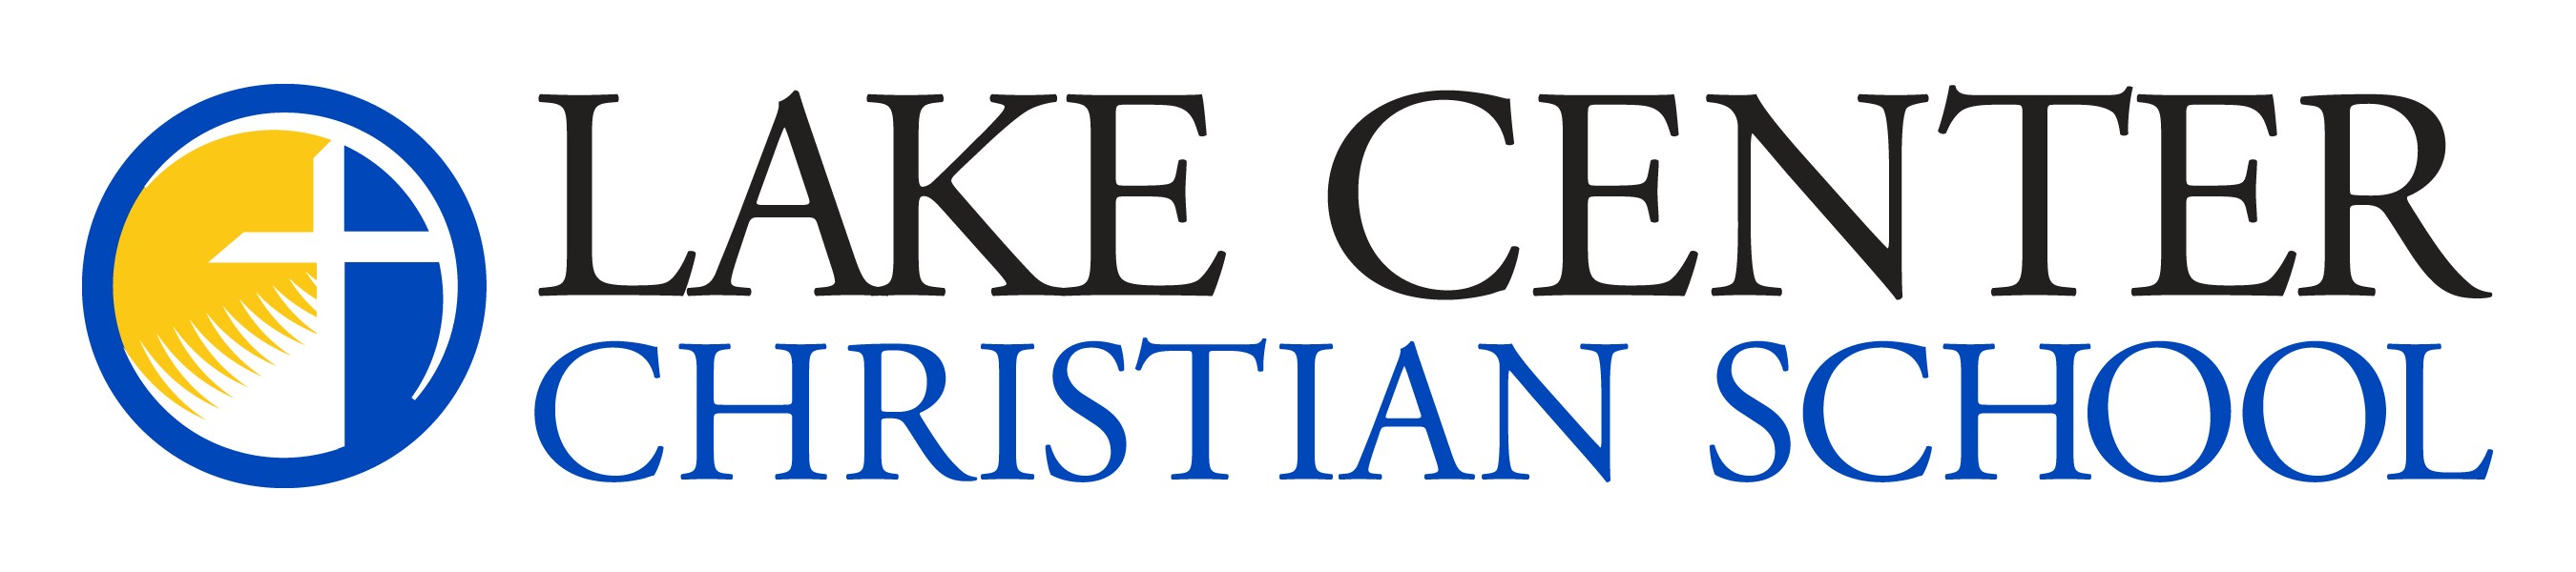 Lake Center Christian School logo